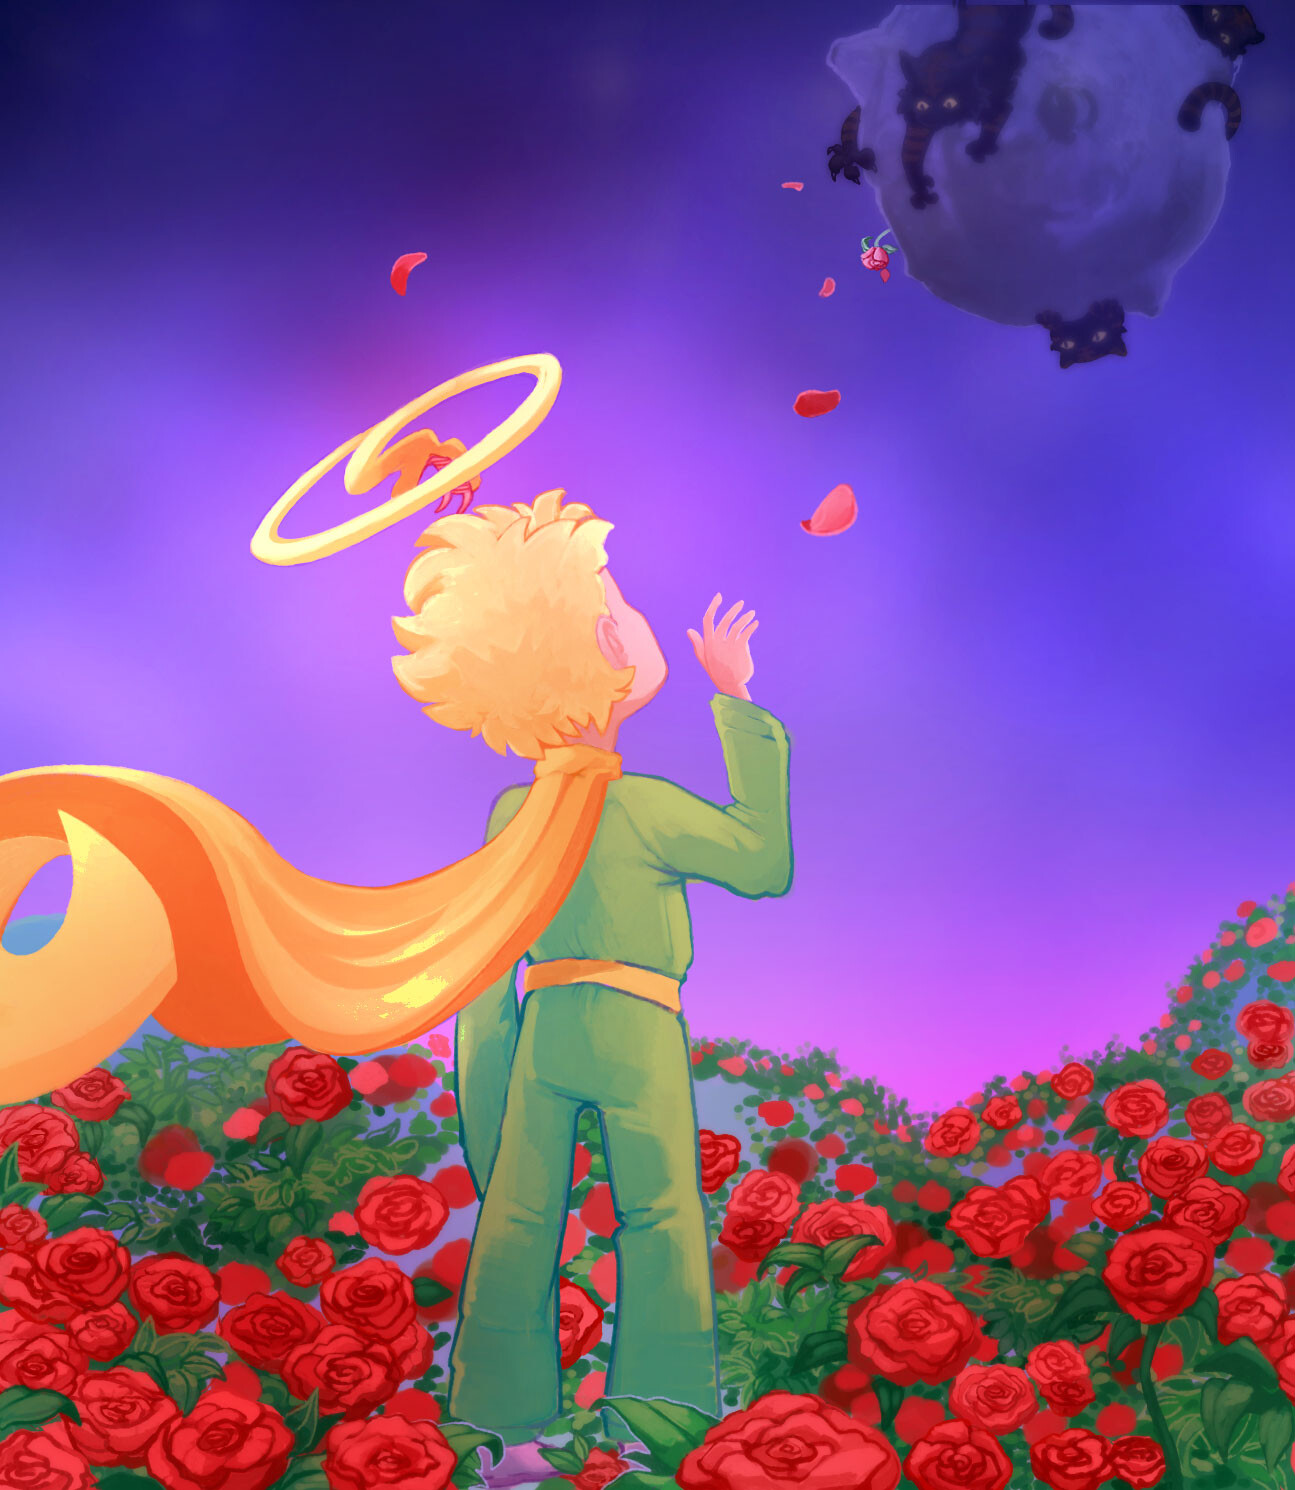 ArtStation - Little Prince's home return